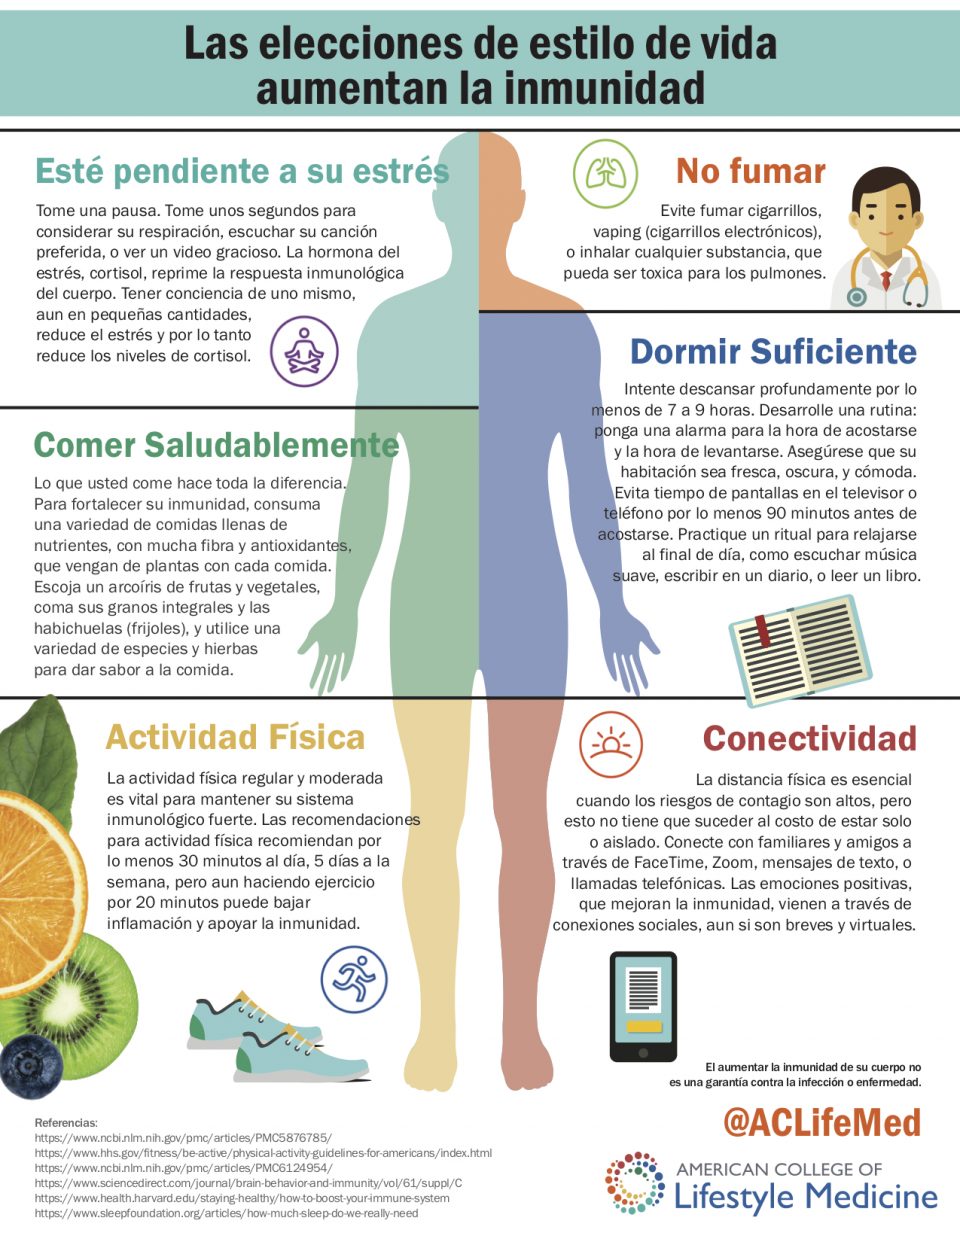 Lifestyle choices Immunity (Spanish)